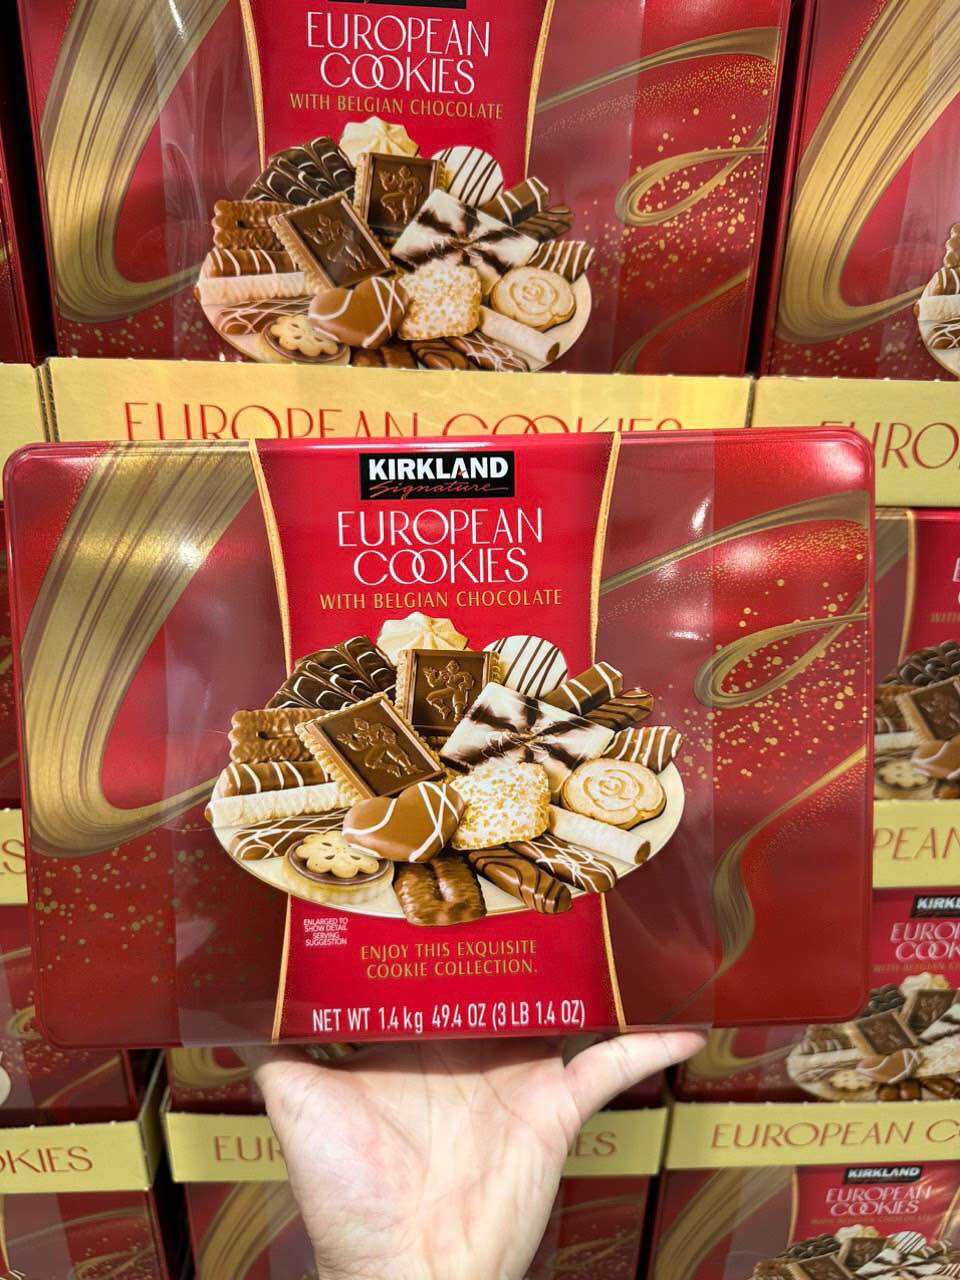 Bánh quy cookies socola Kirkland Signature European Cookies 1.4 kg của Mỹ.